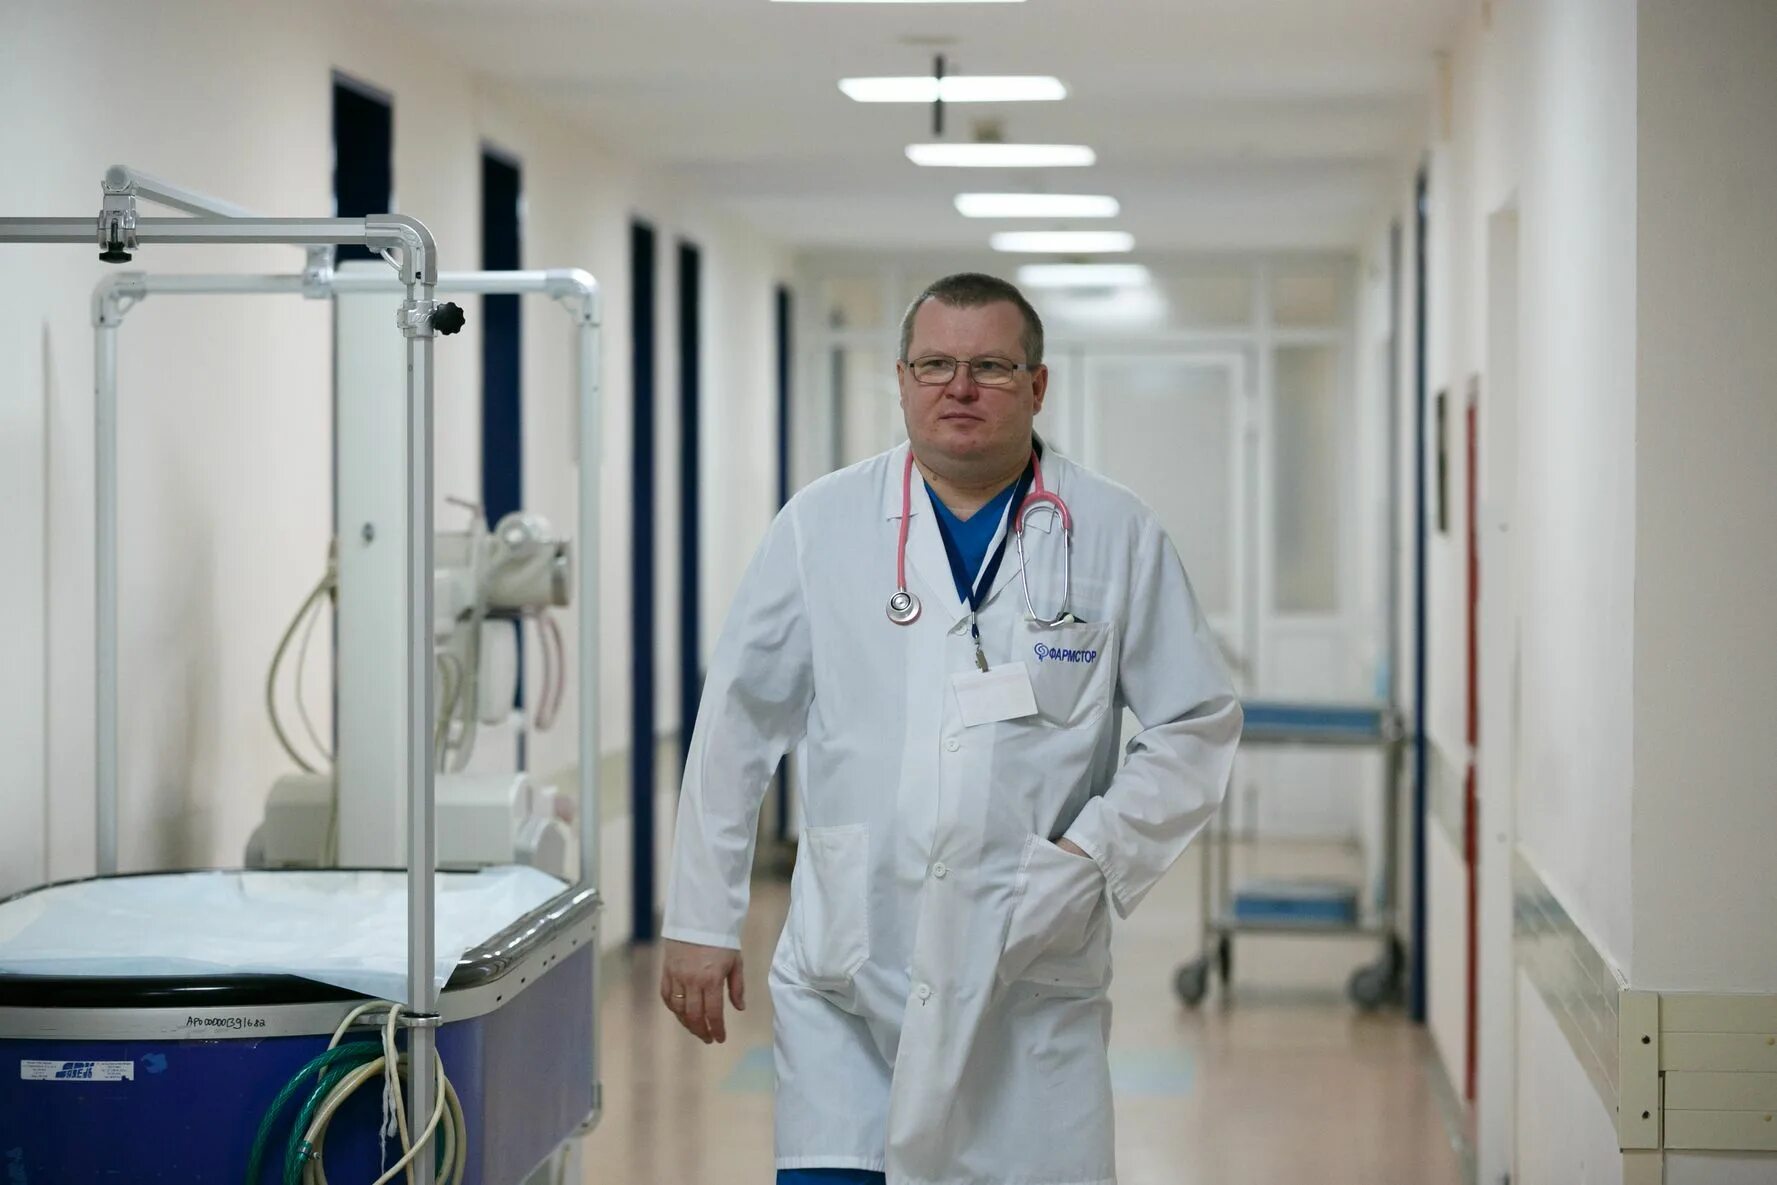 Вакансии врача реаниматолога в москве. Заведующий отделением реаниматологии.